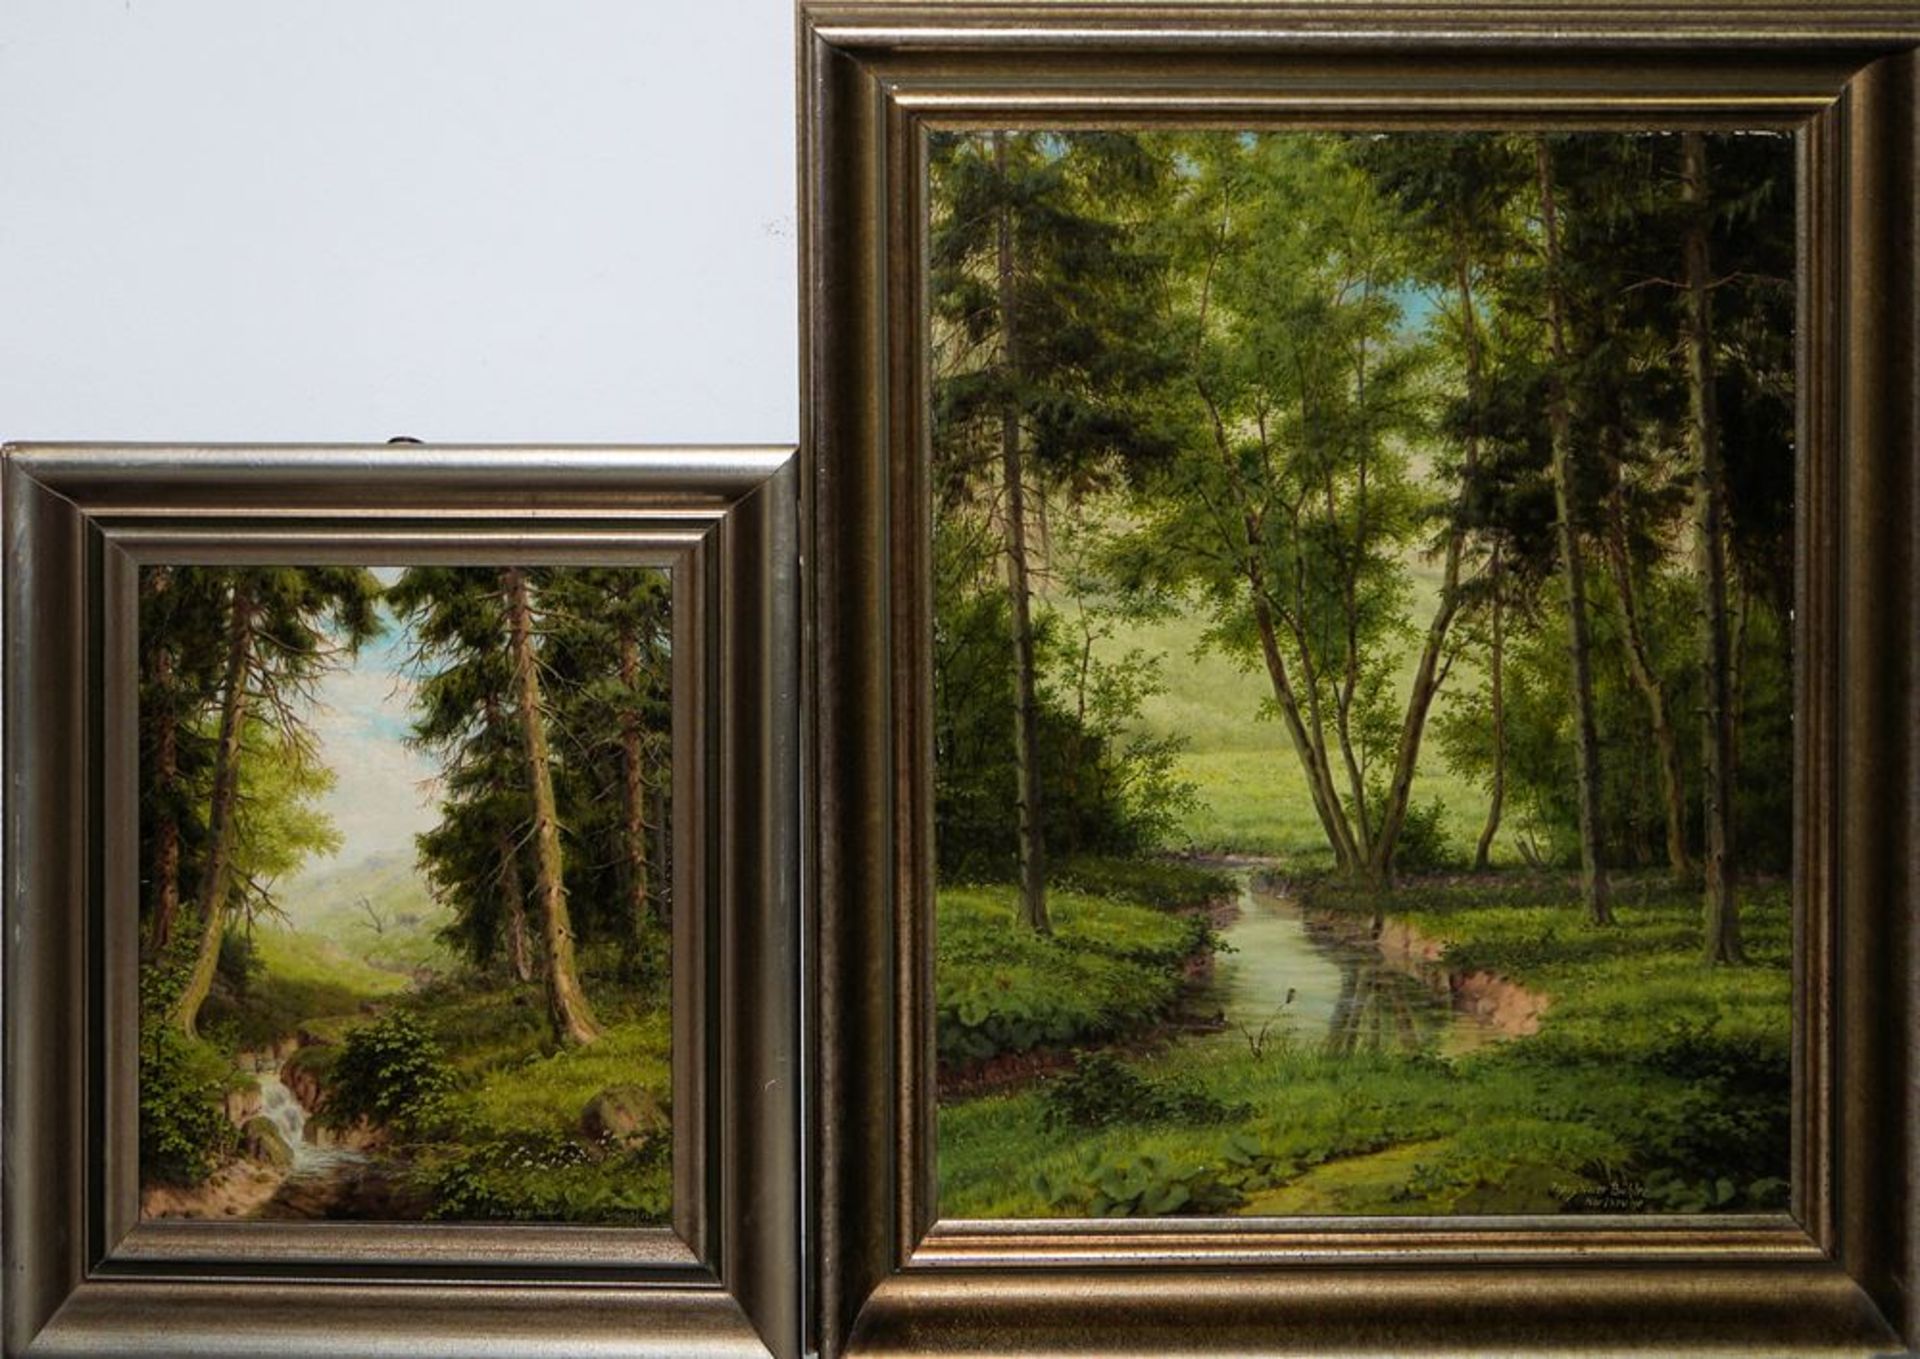 6x badische Künstler bzw. Landschaften, 1900 - Mitte 20. Jh., 6 Ölgemälde, alle gerahmt - Bild 4 aus 4